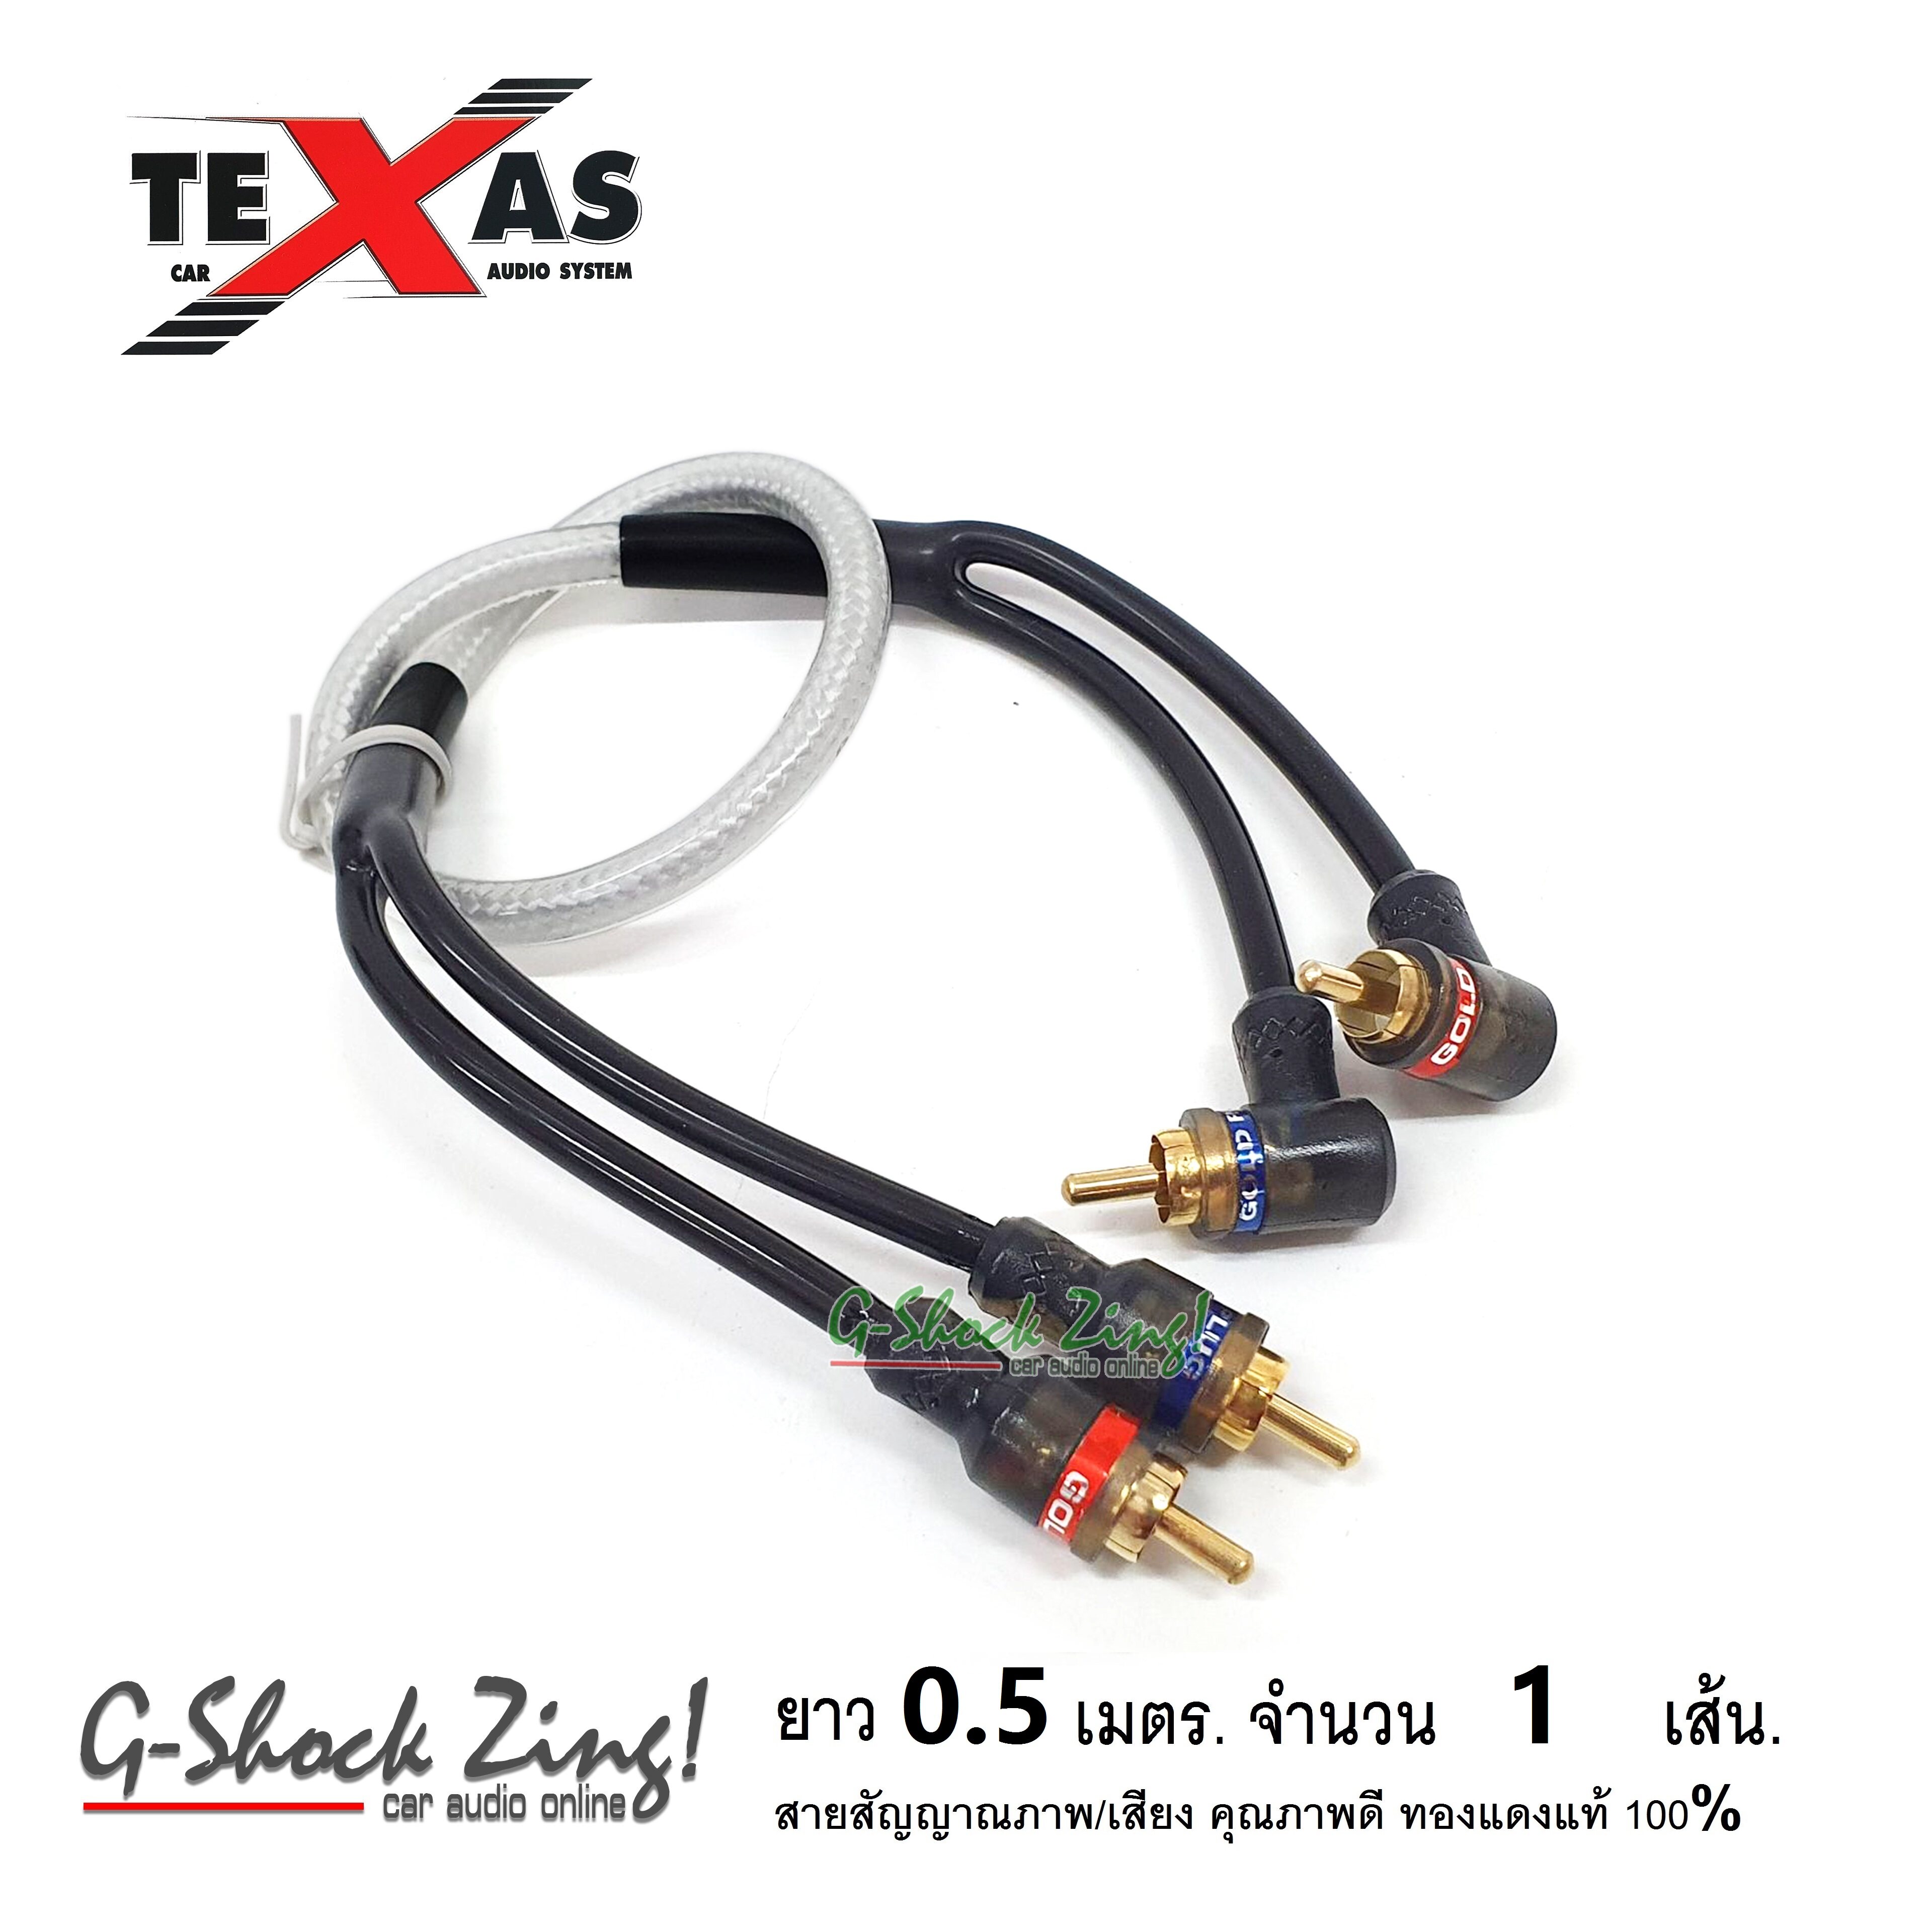 TEXAS สายสัญญาณ RCA ภาพ/เสียง RCA/AUX คุณภาพดี ทองแดงแท้ 100% หัว(ตรง+งอ) ยาว 0.50 เมตร  จำนวน 1 เส้น